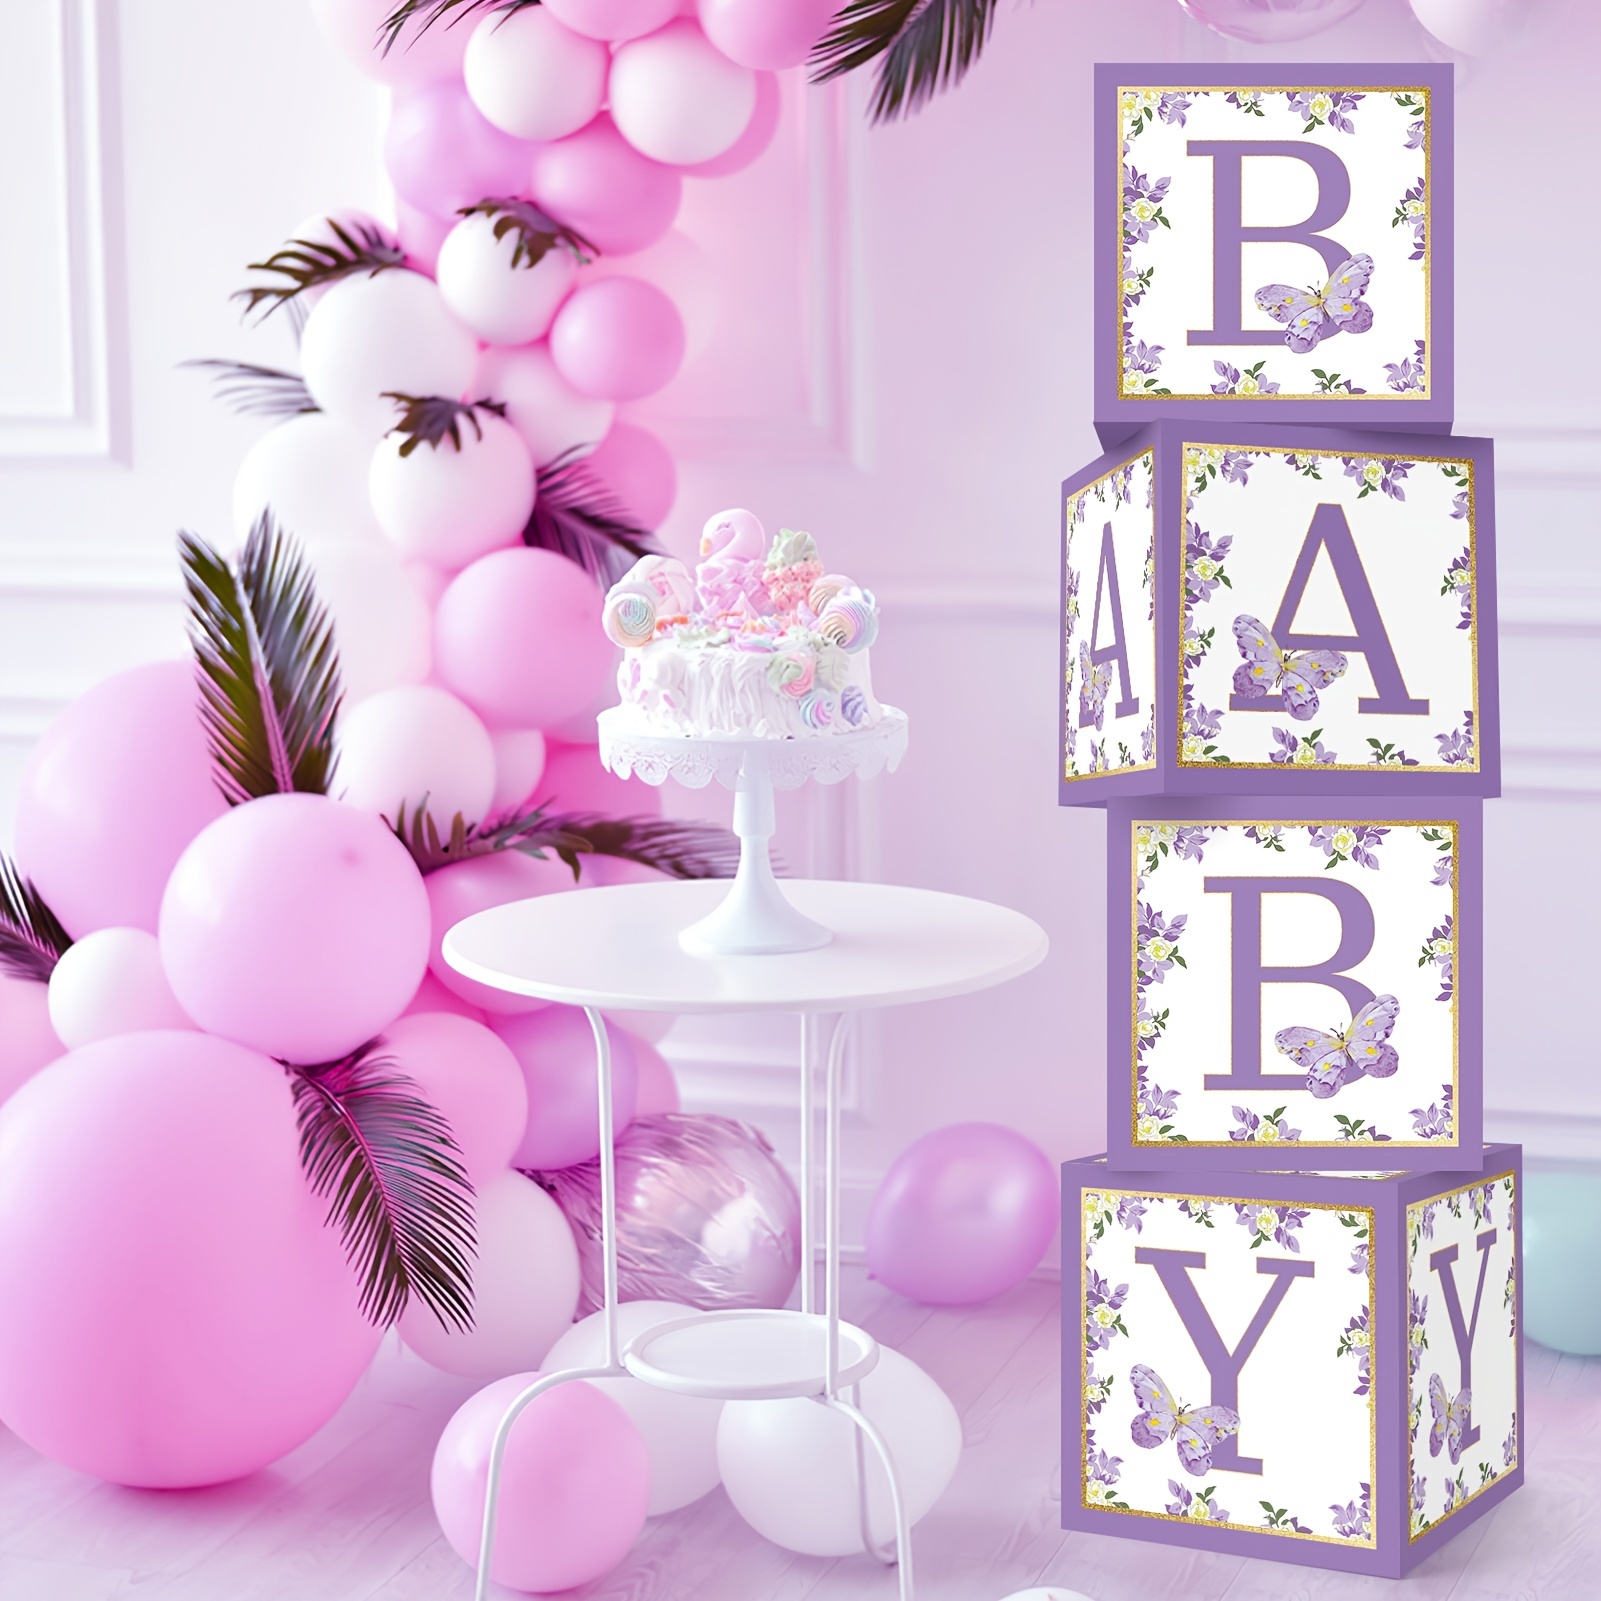 Hermosas decoraciones para fiesta de baby shower cerca de pared de